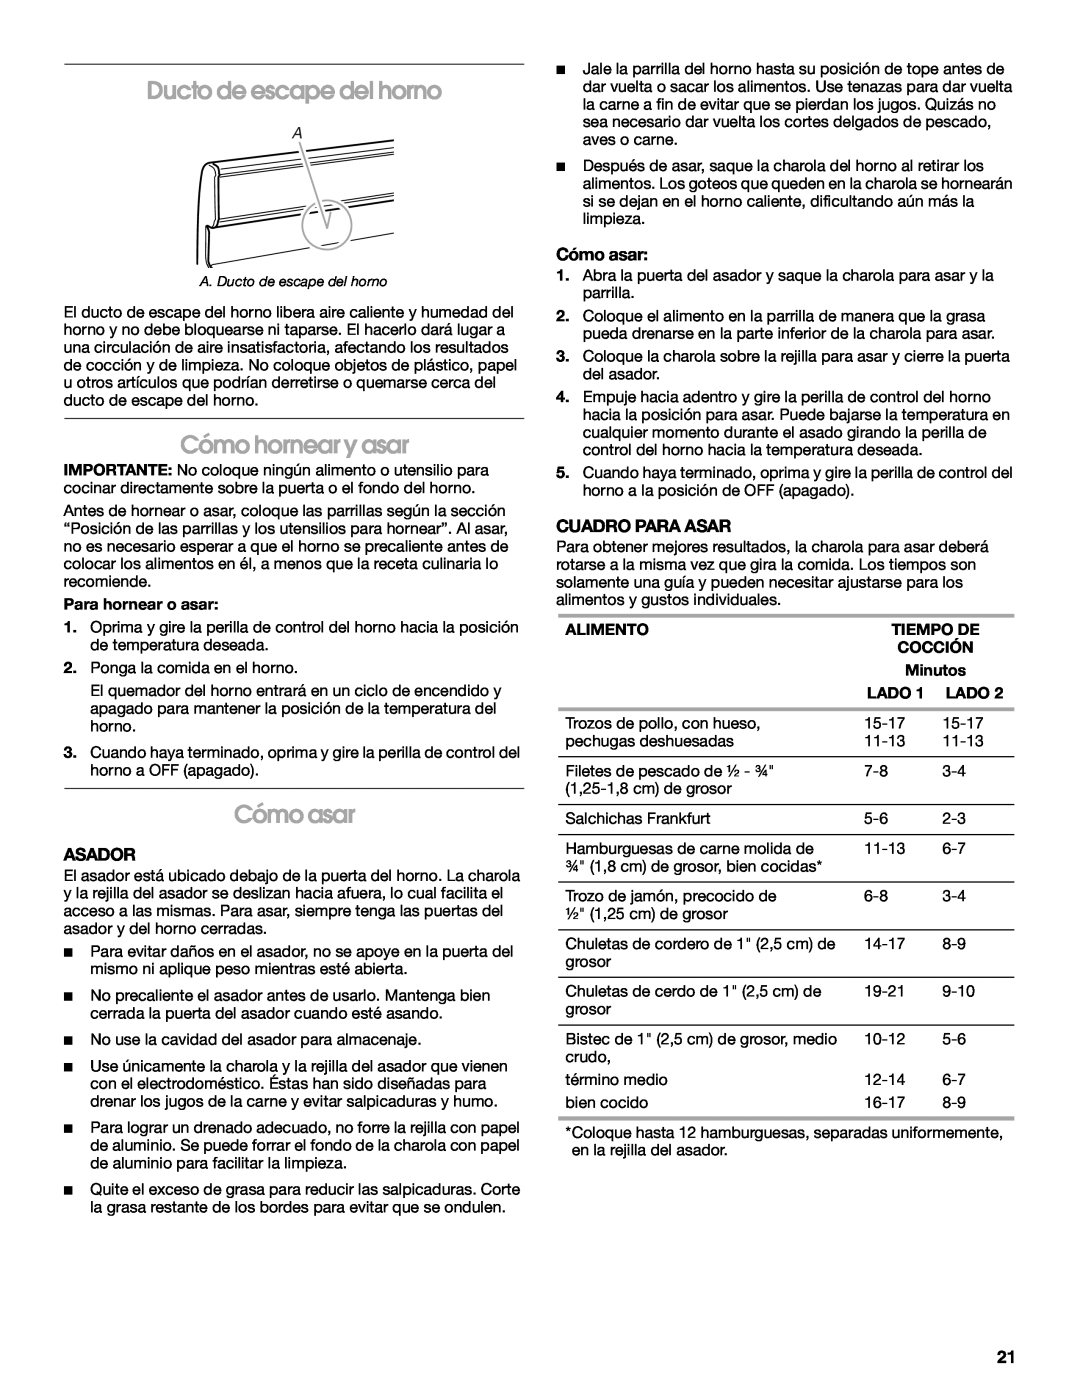 Whirlpool W10121768B manual Ducto de escape del horno, Cómo hornear y asar, Cómo asar, Asador, Cuadro Para Asar 